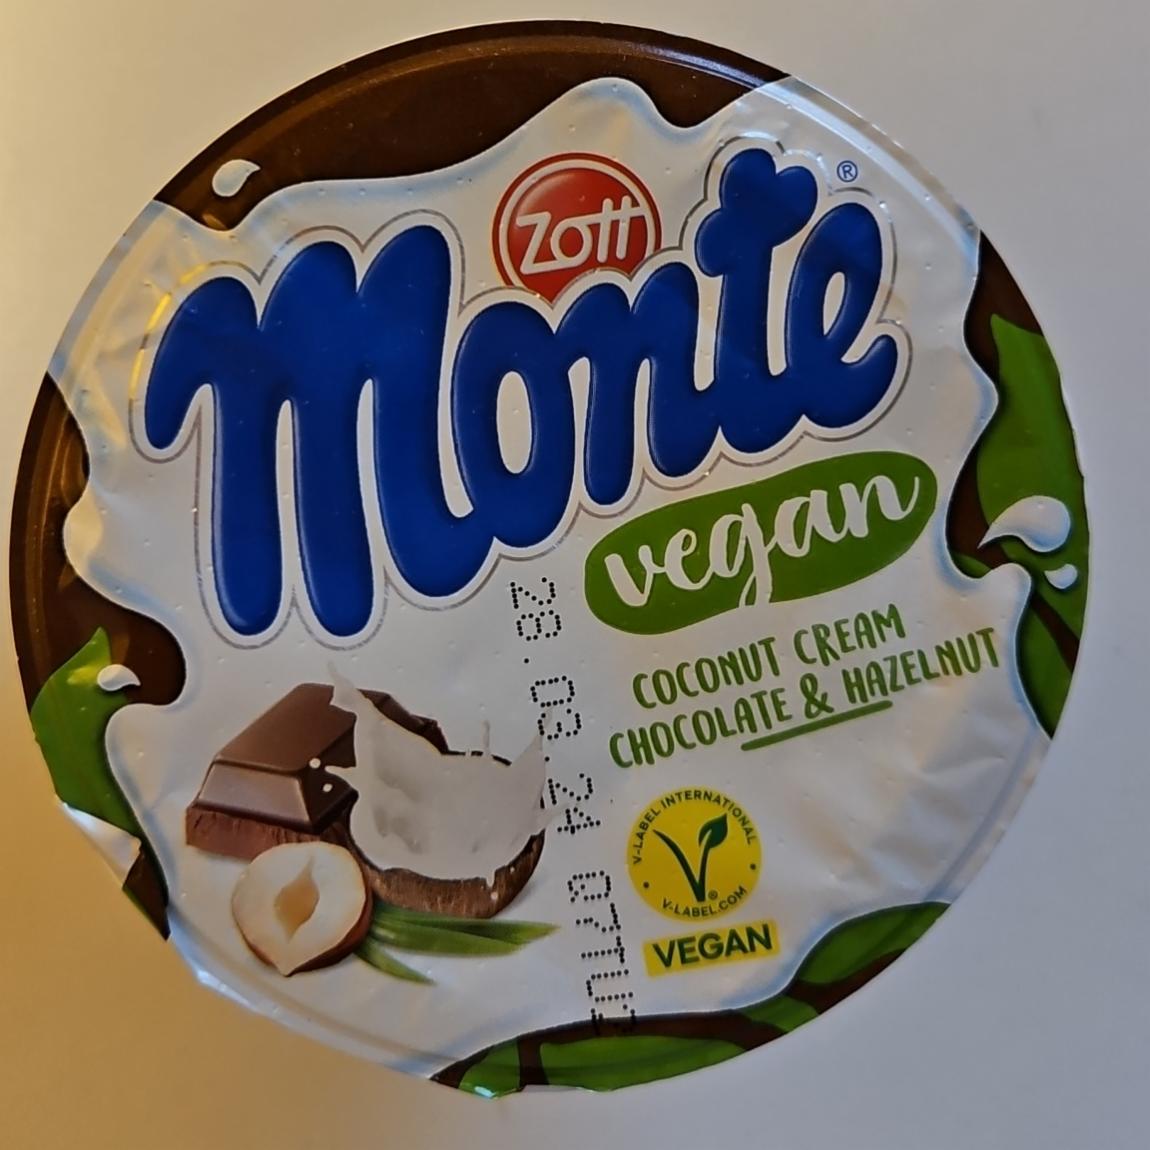 Zdjęcia - Monte vgan coconut cream chocolate & hazelnut Zott